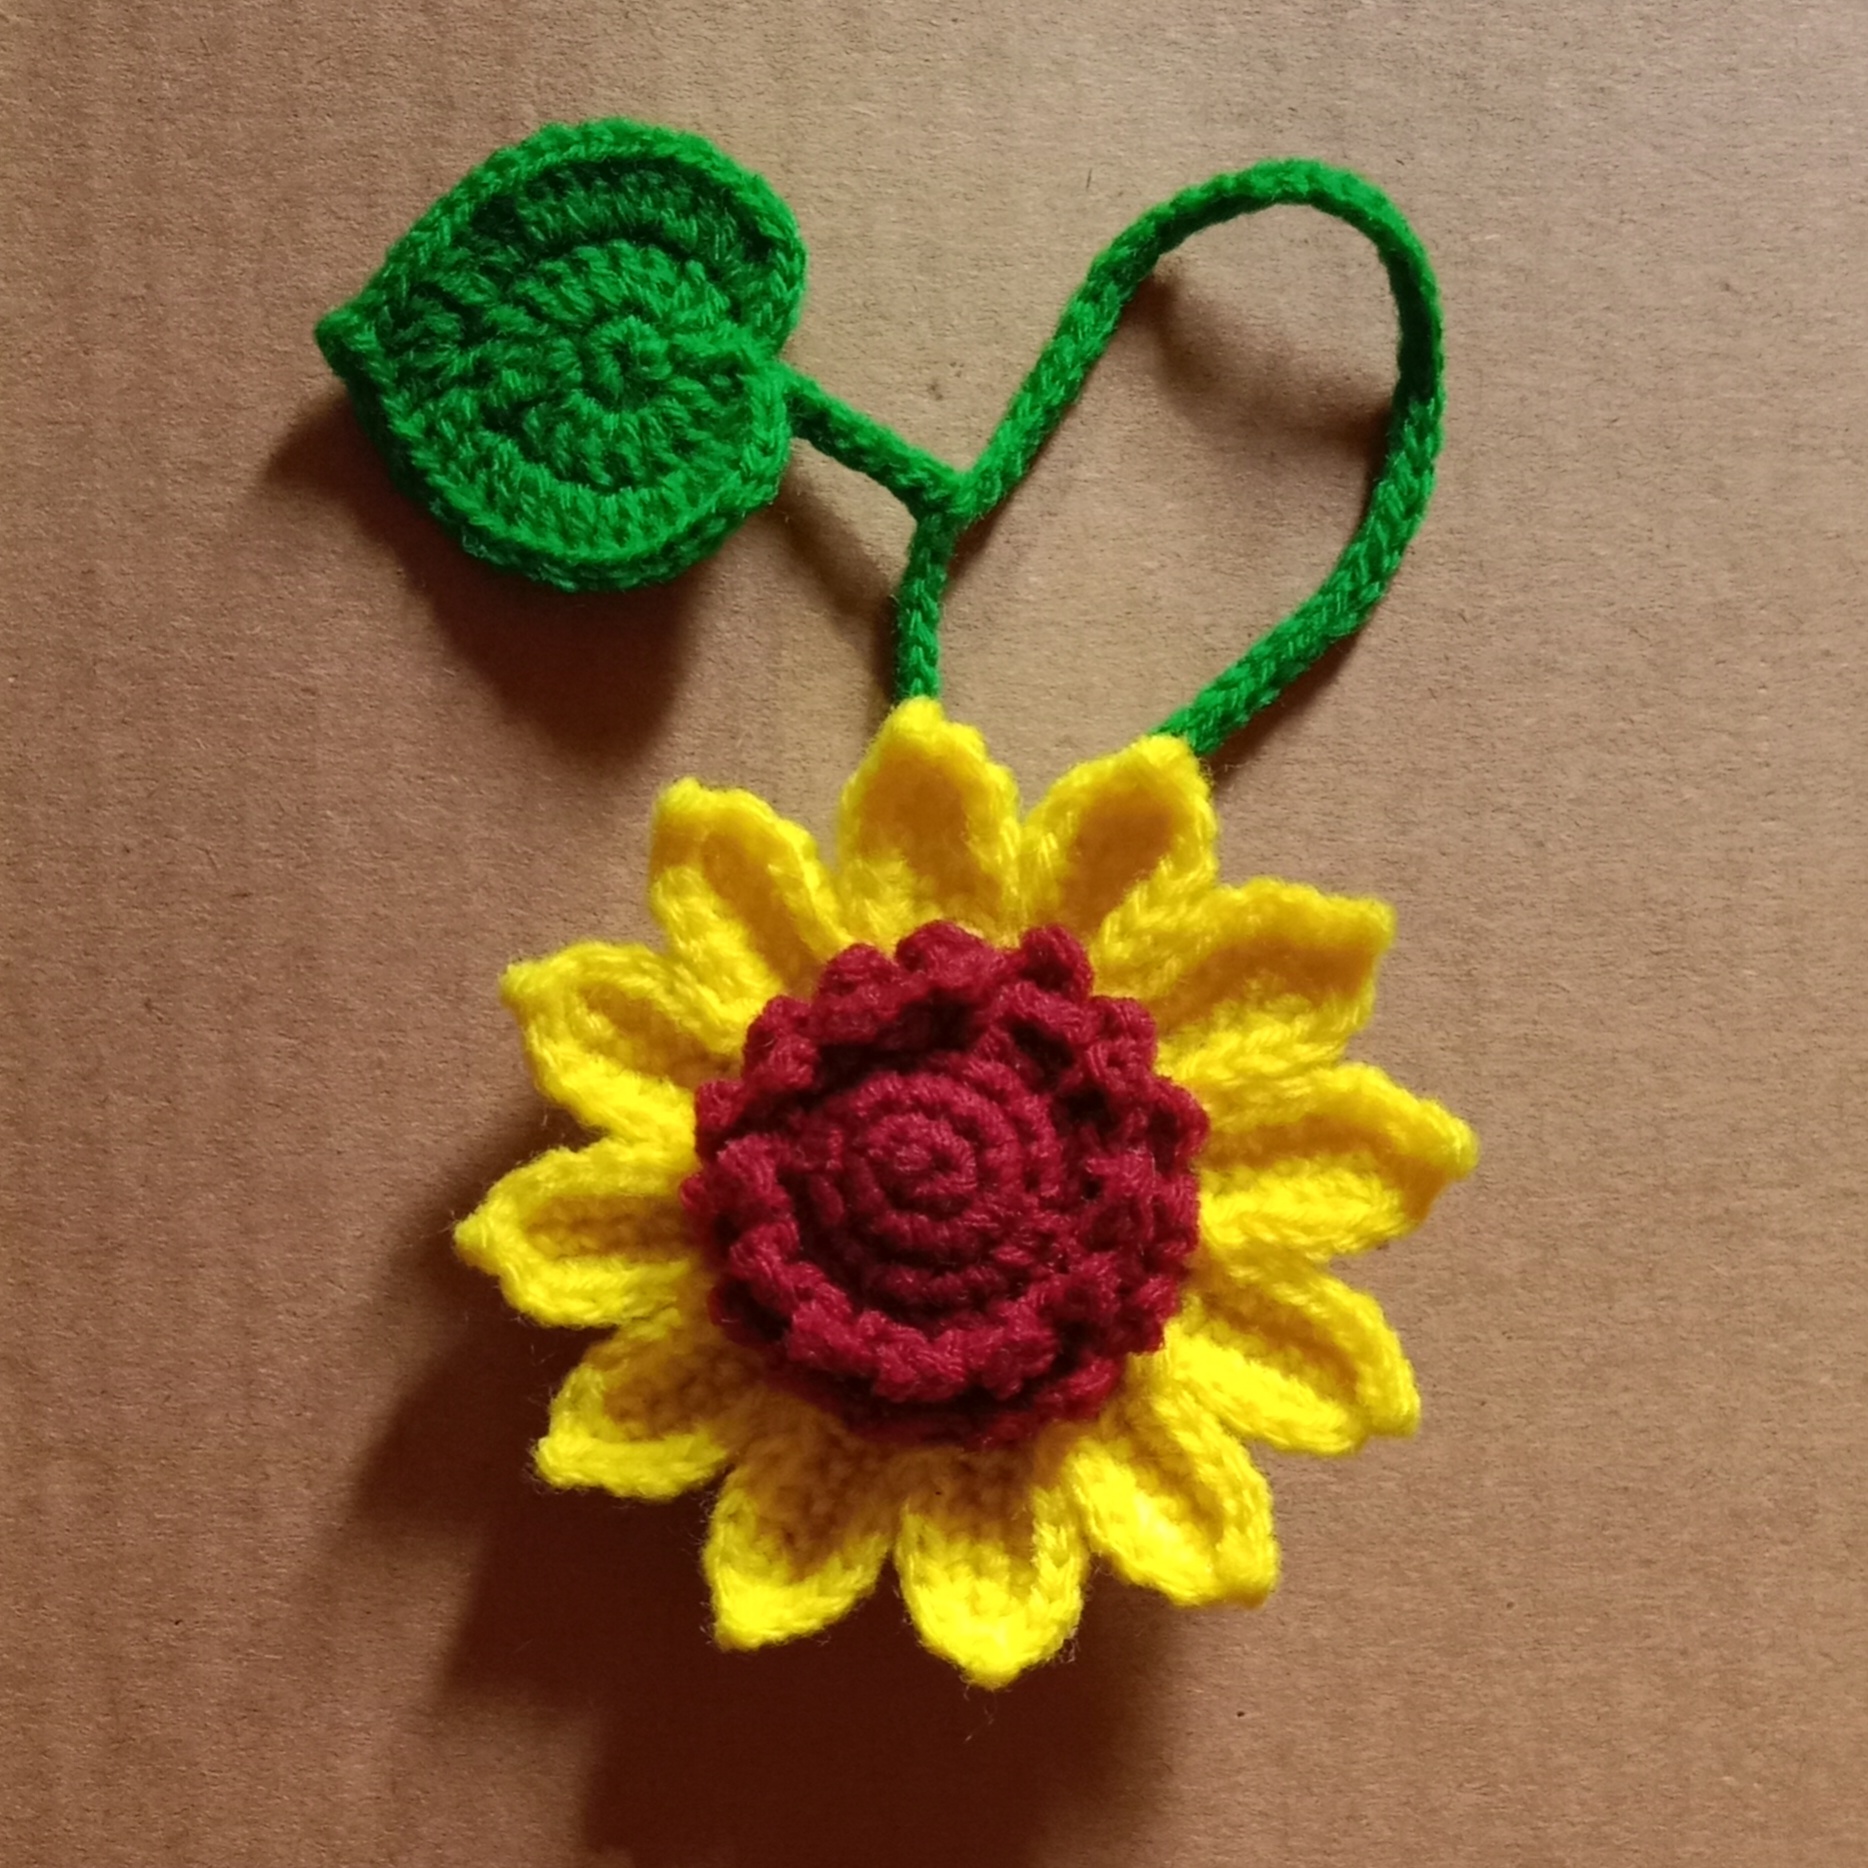 Crochet Woollen Sunflower Keychain image